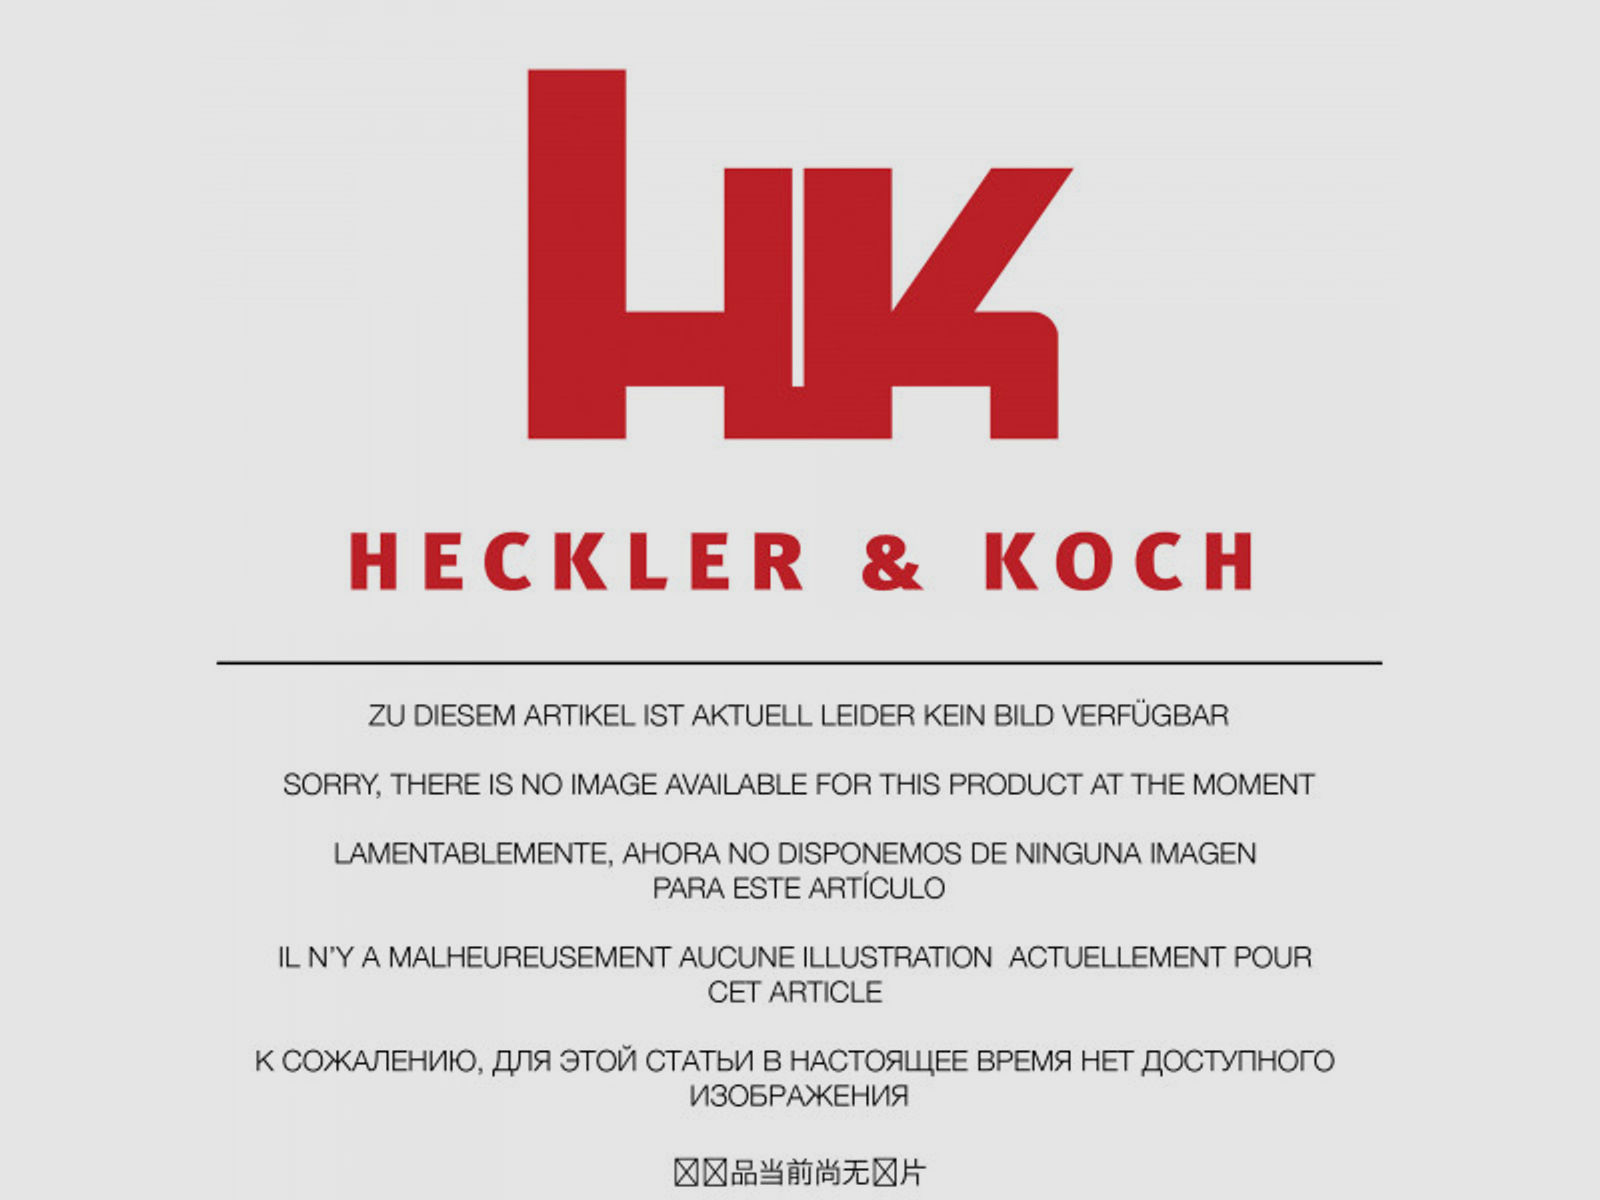 Heckler & Koch Gewindeschutz HK USP Tactical 45